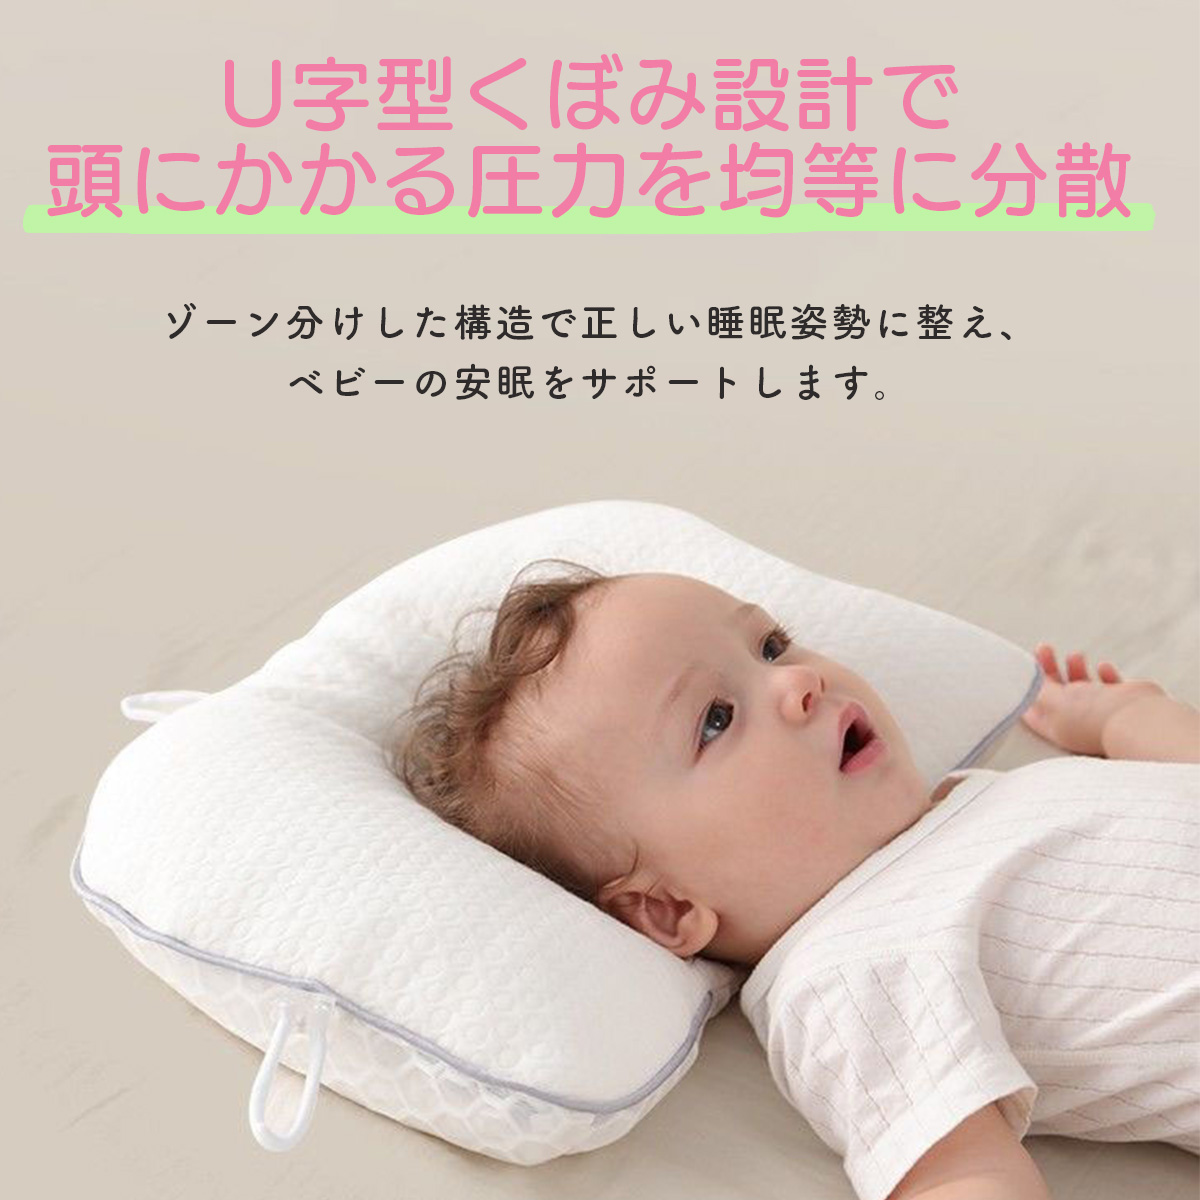 赤ちゃん 枕 矯正 頭の形 絶壁 向き癖 ドーナツ枕 傾斜 ベビー枕 新生児